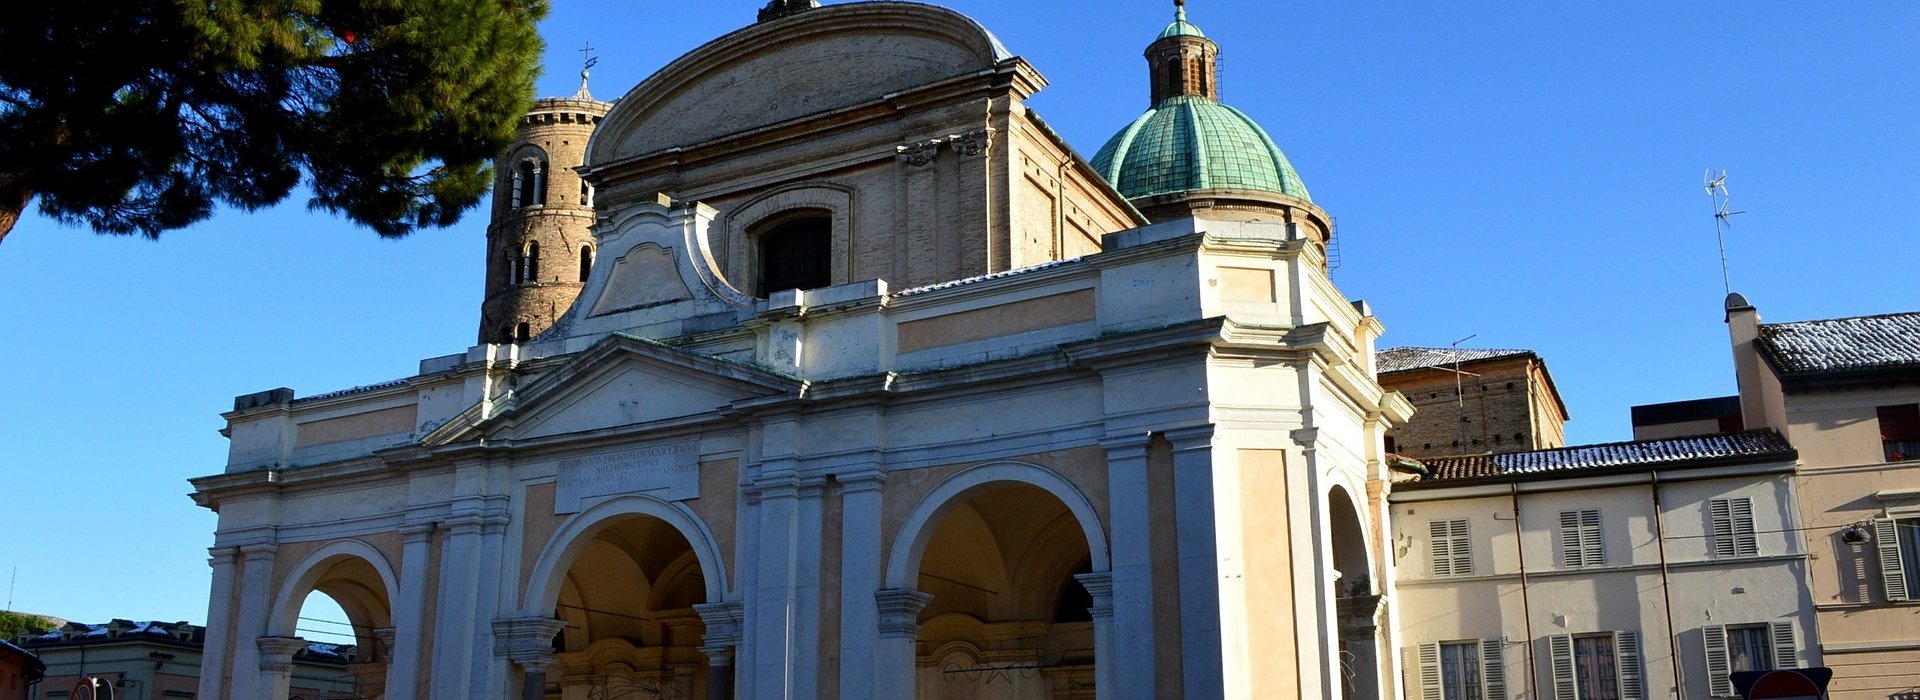 Conoscere Dante con visita a Ravenna partendo da Firenze